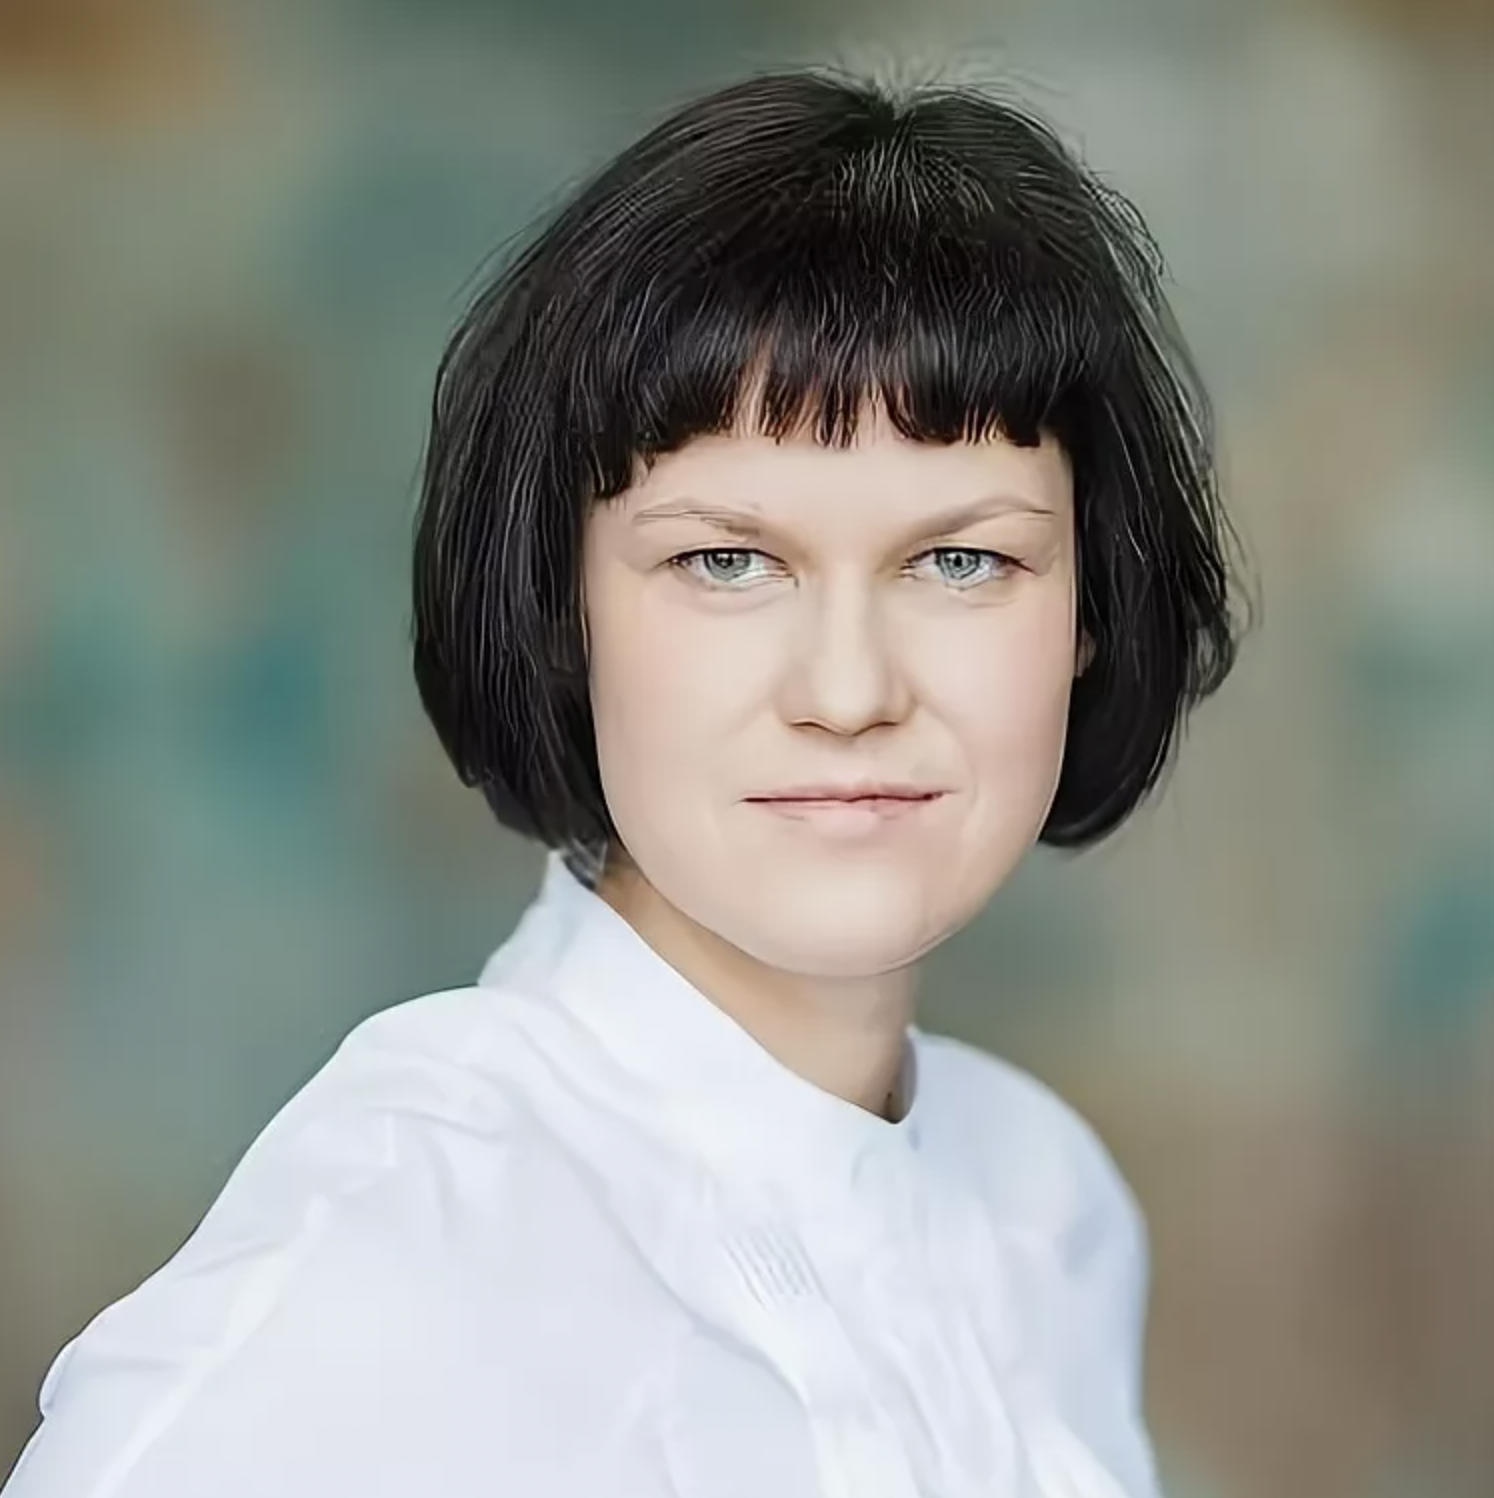 Ольга Набатникова